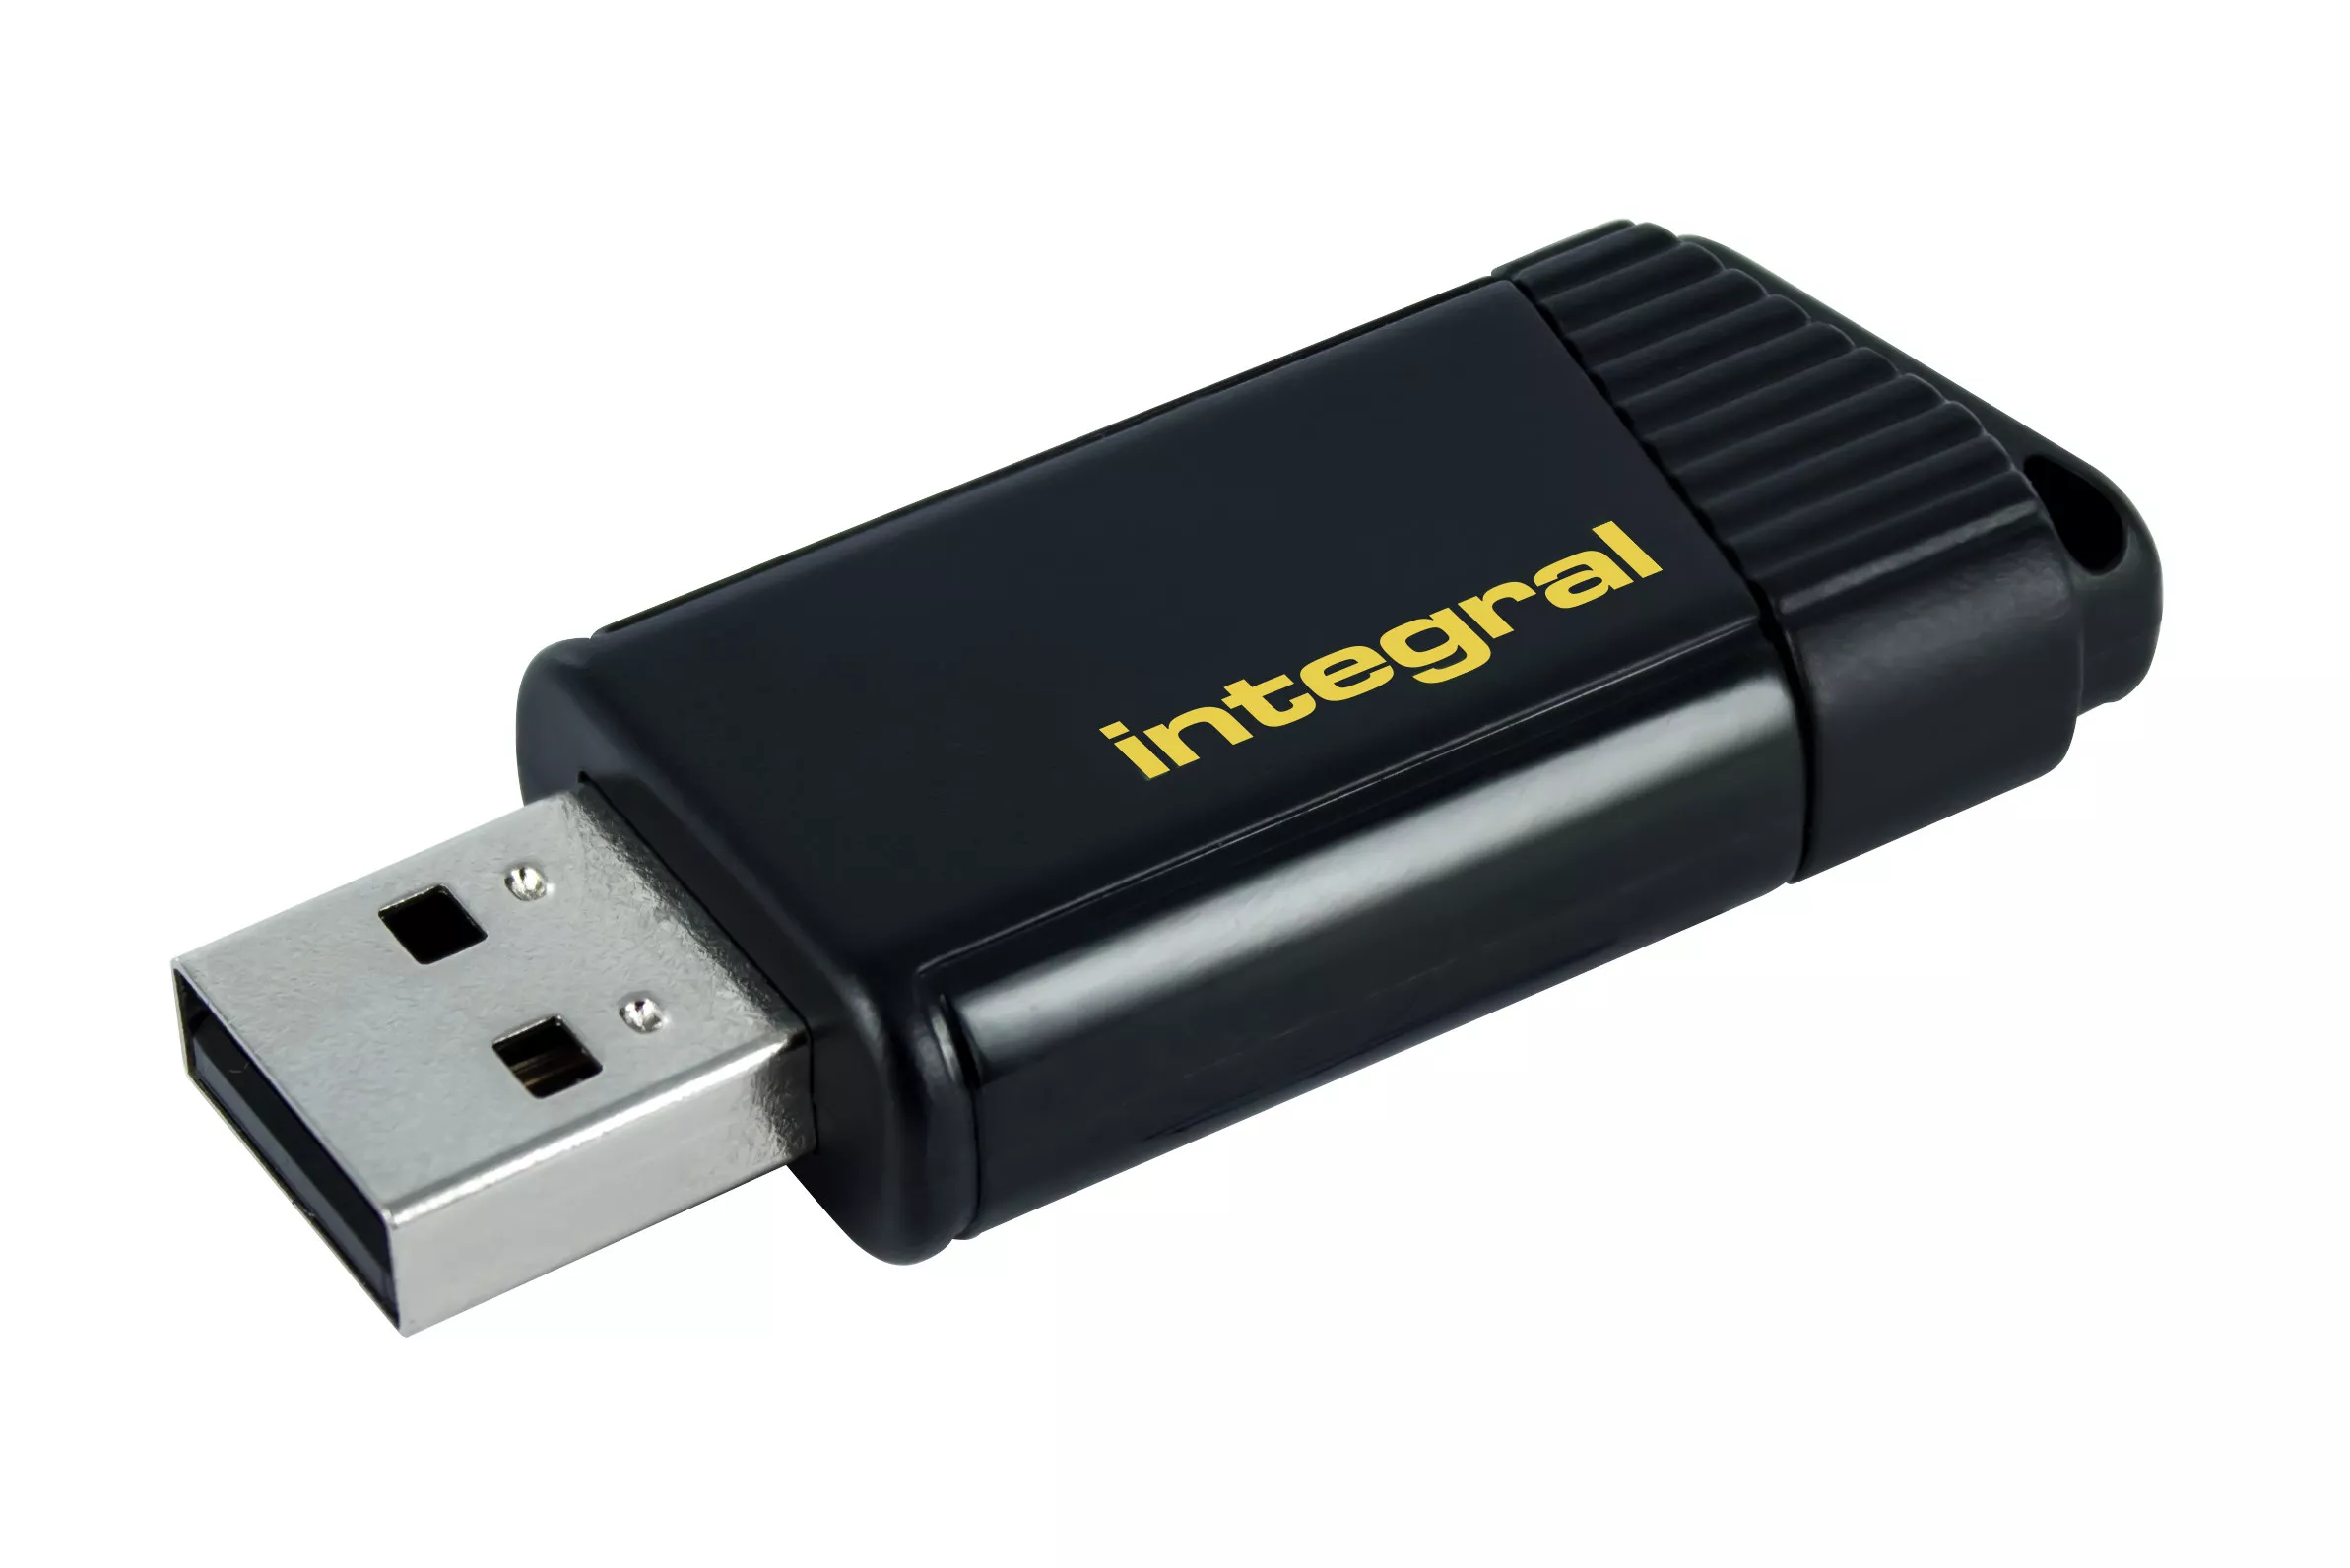 Achat Integral 64GB USB2.0 DRIVE PULSE YELLOW INTEGRAL et autres produits de la marque Integral